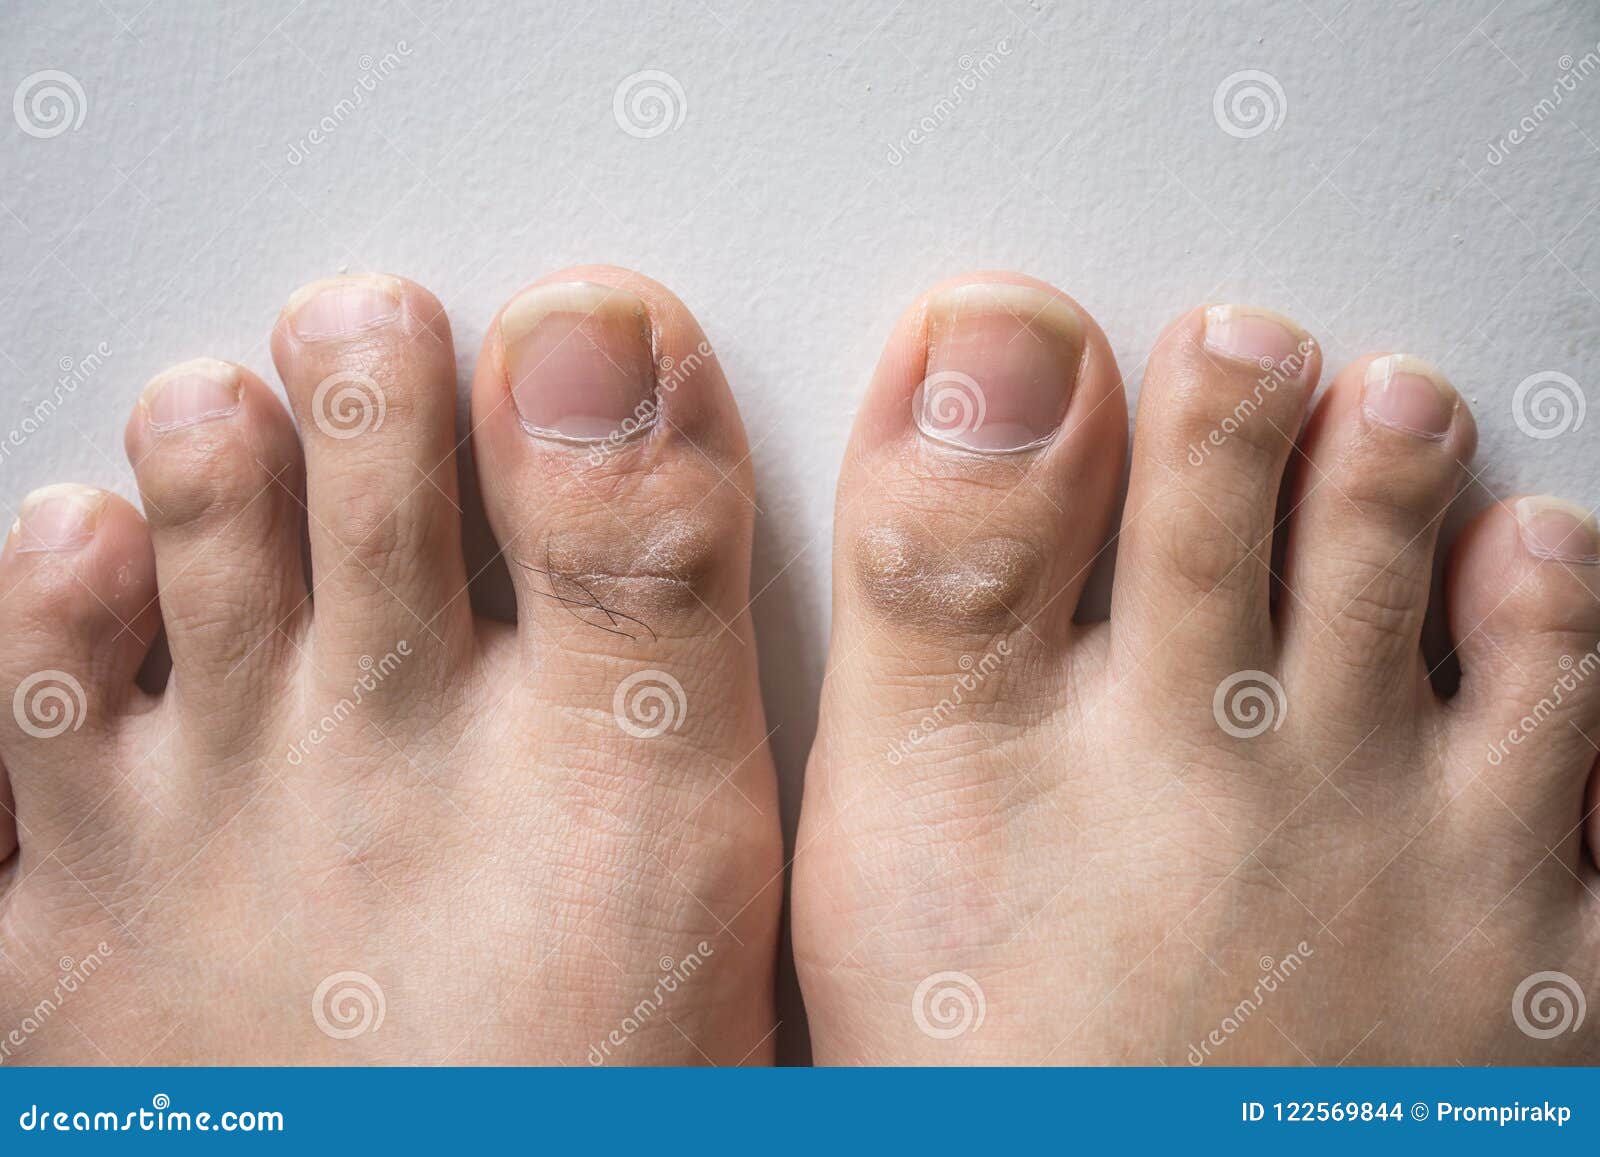 在脚趾钉子的真菌 库存照片. 图片 包括有 创伤, 情况, 无耻的, 脚病学, 空白, 健康, 医学, 问题 - 107198182